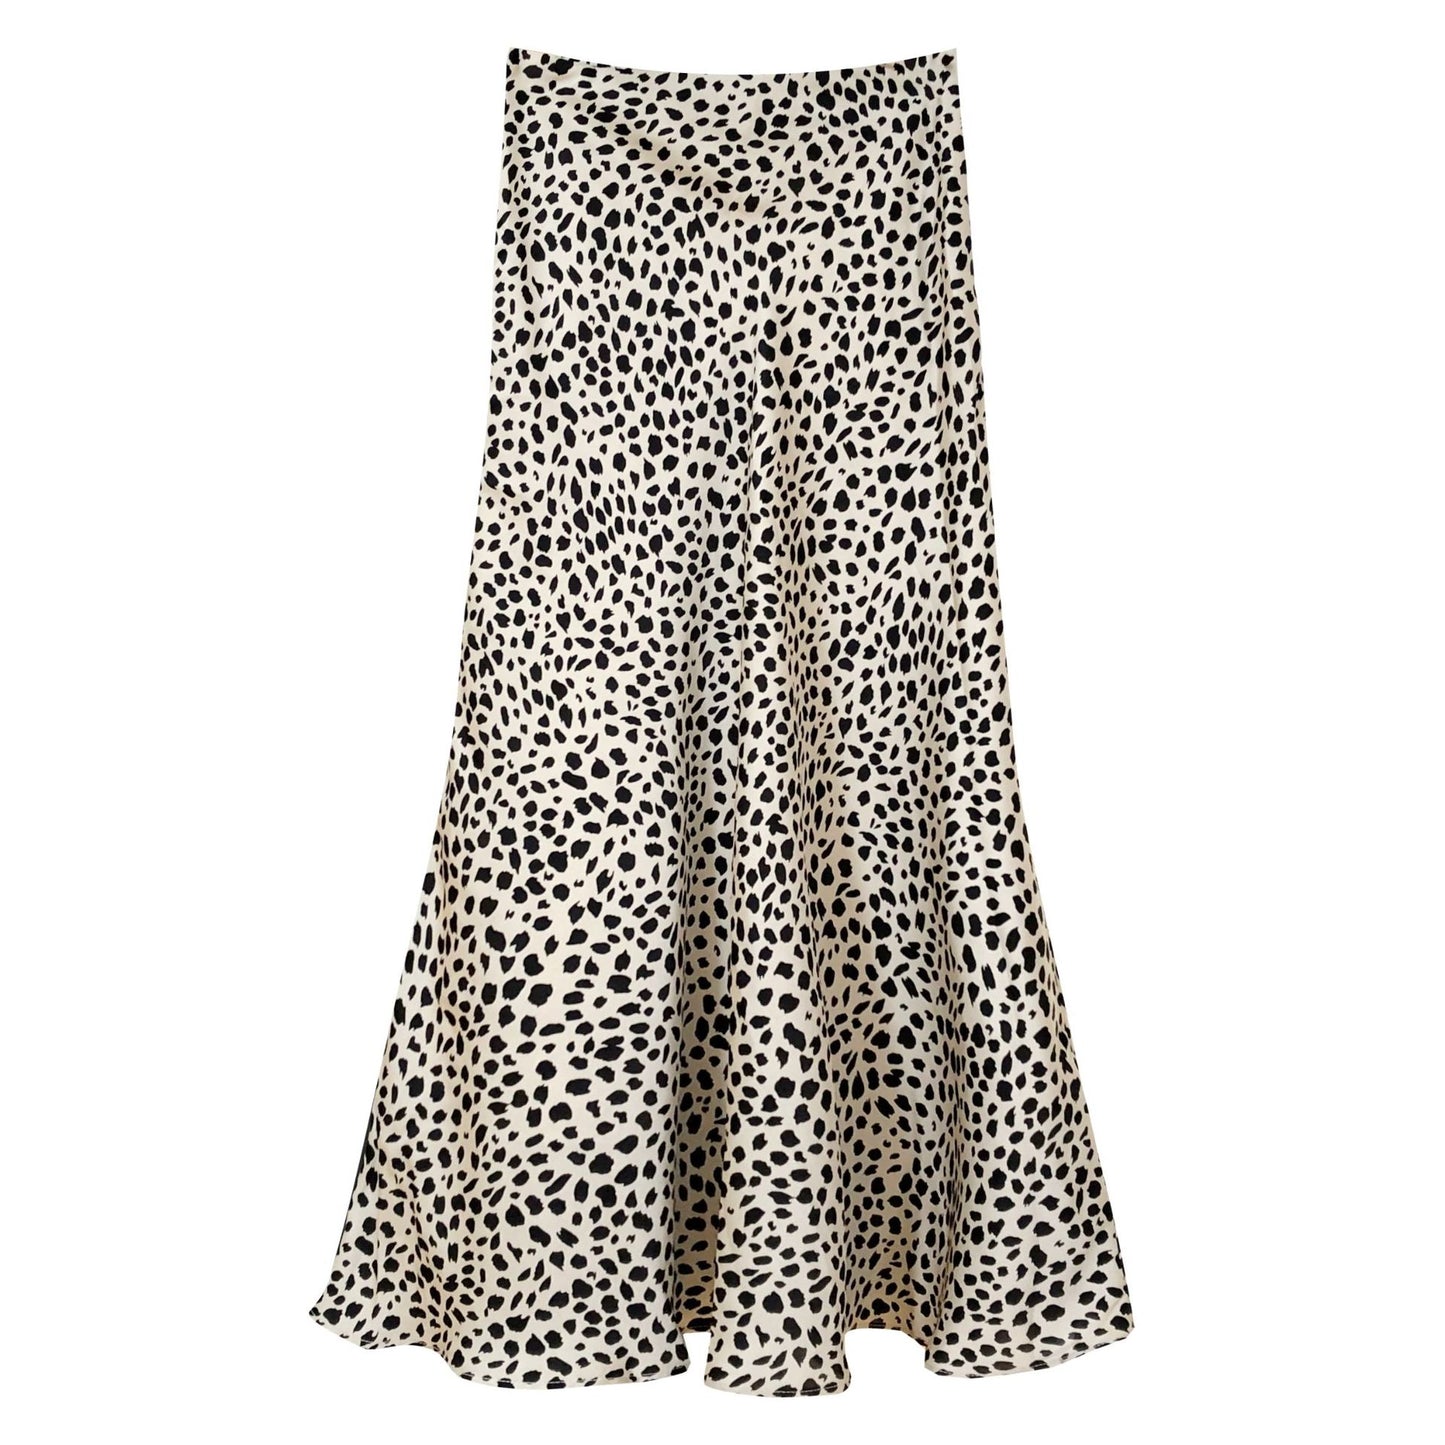 Leopard Print Lightweight Skirt